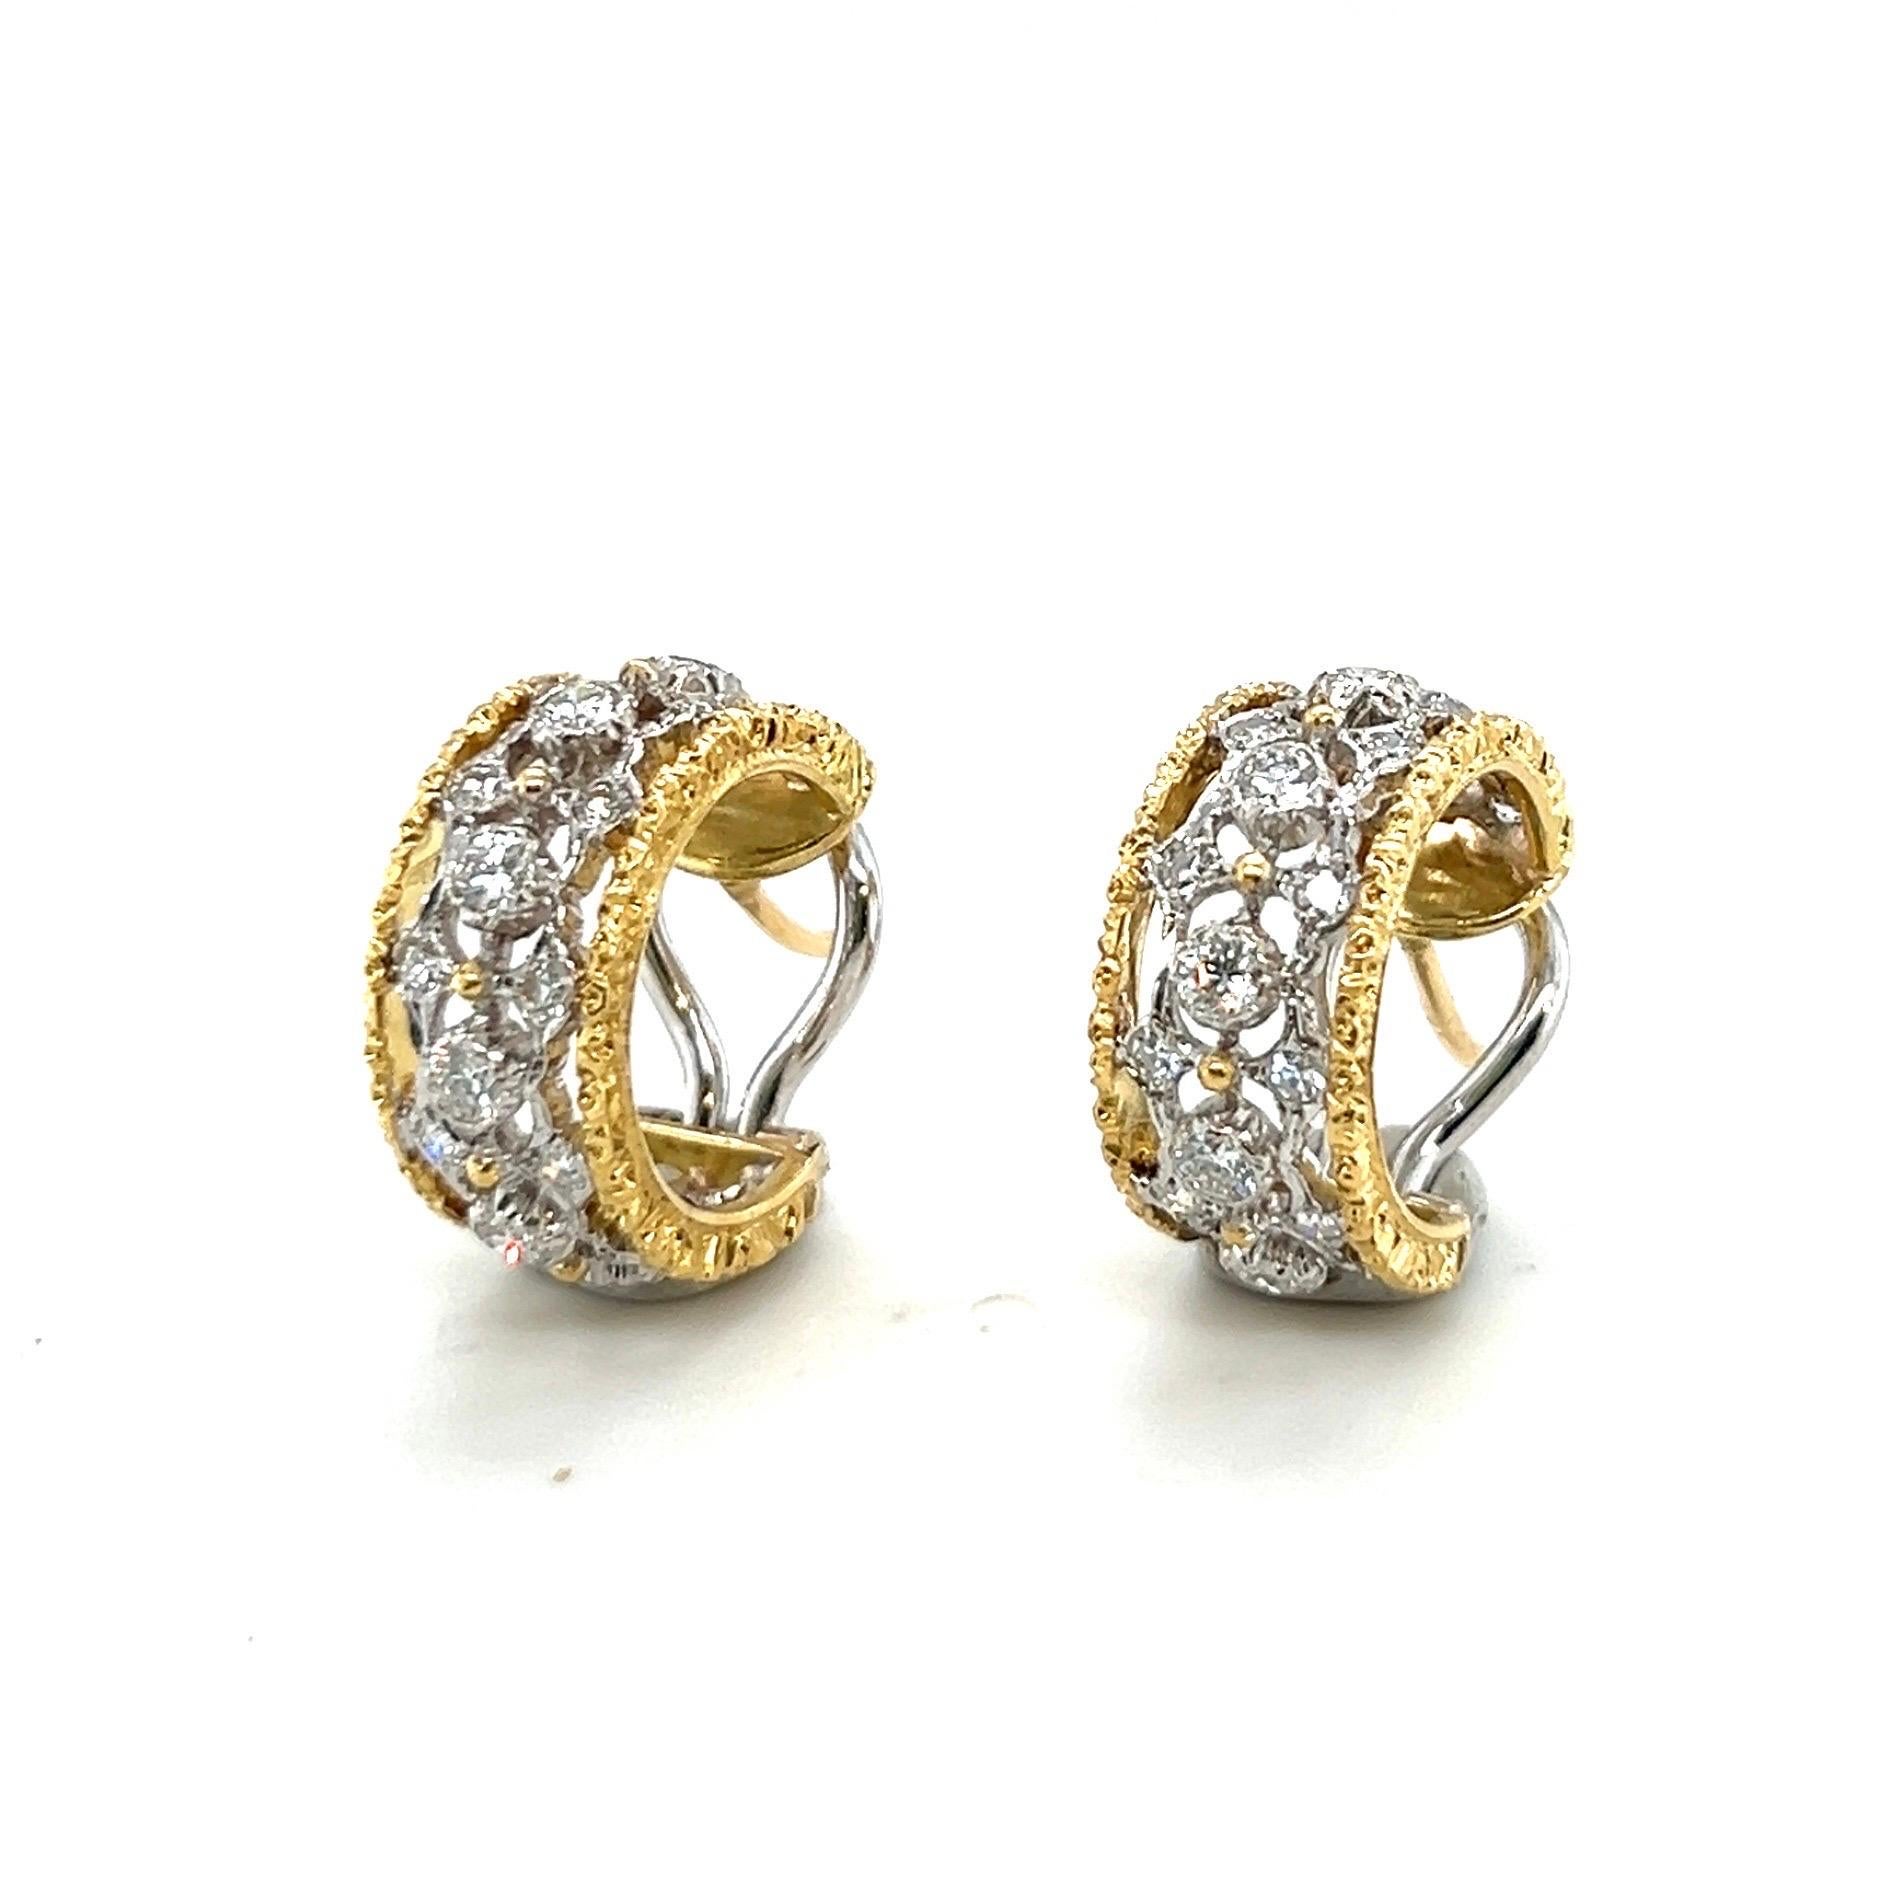 Creolen aus 18 Karat Gold und Diamanten von Mario Buccellati für Damen oder Herren